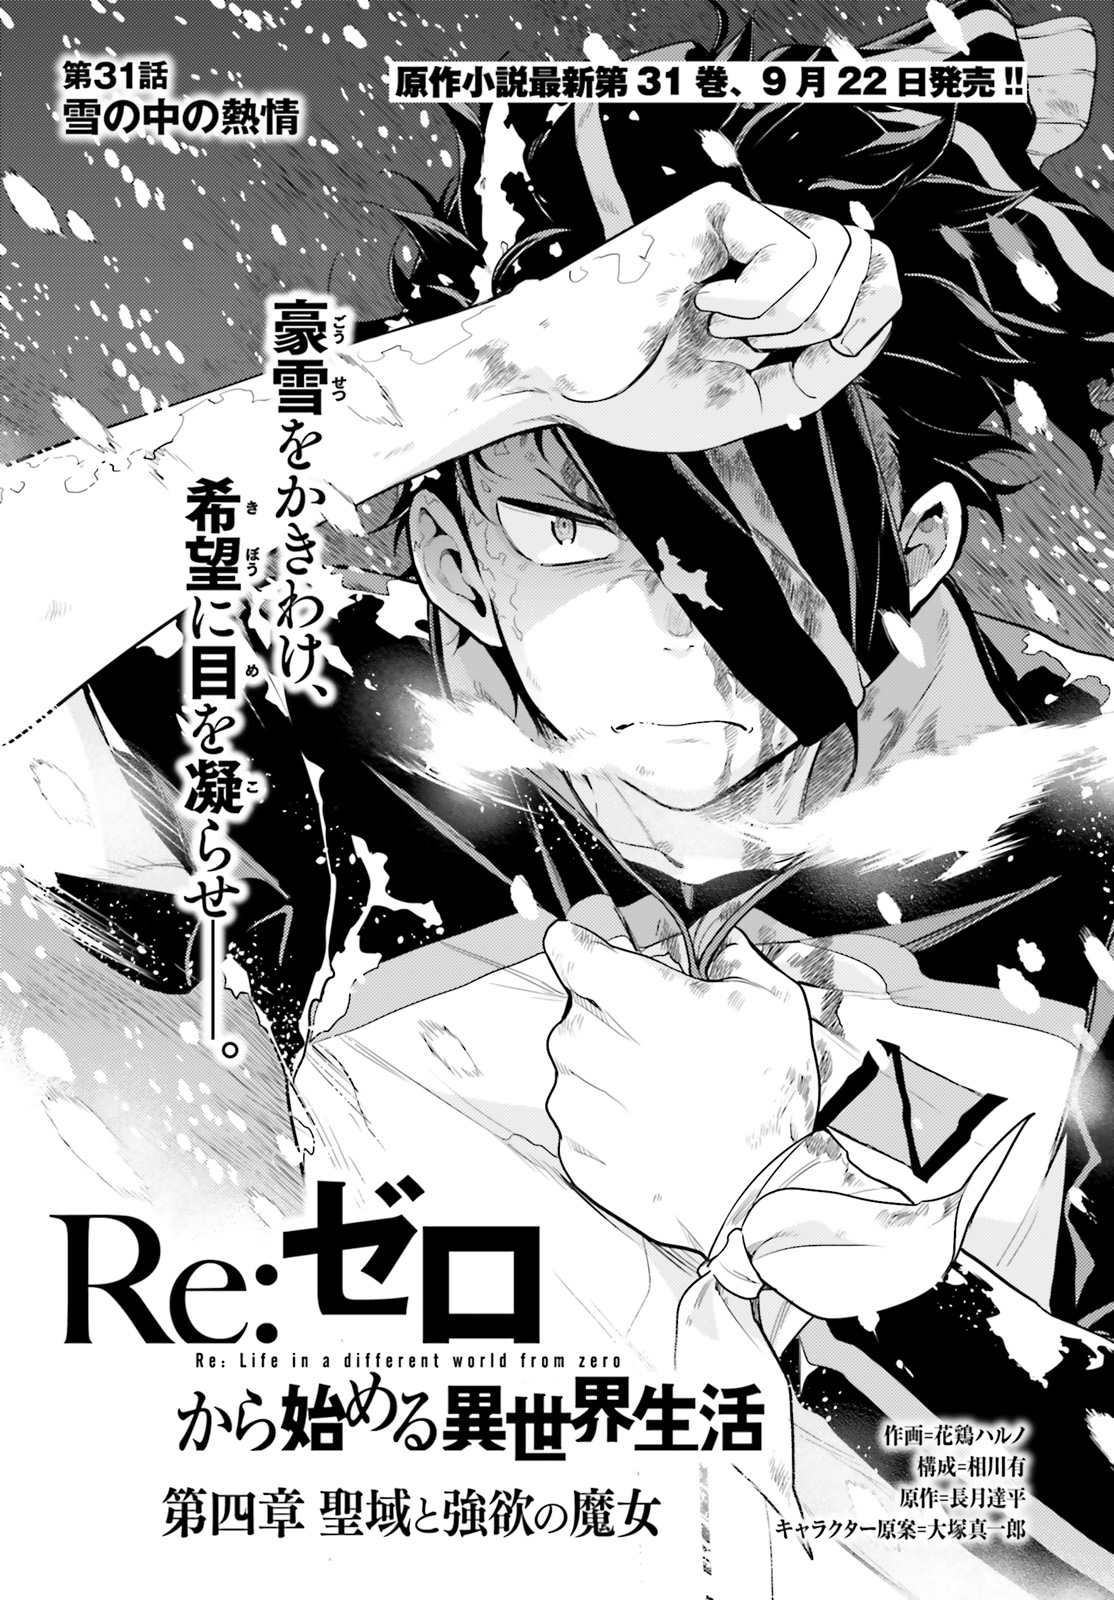 Daiyonshou Chapter 31 | Re:Zero Wiki | Fandom